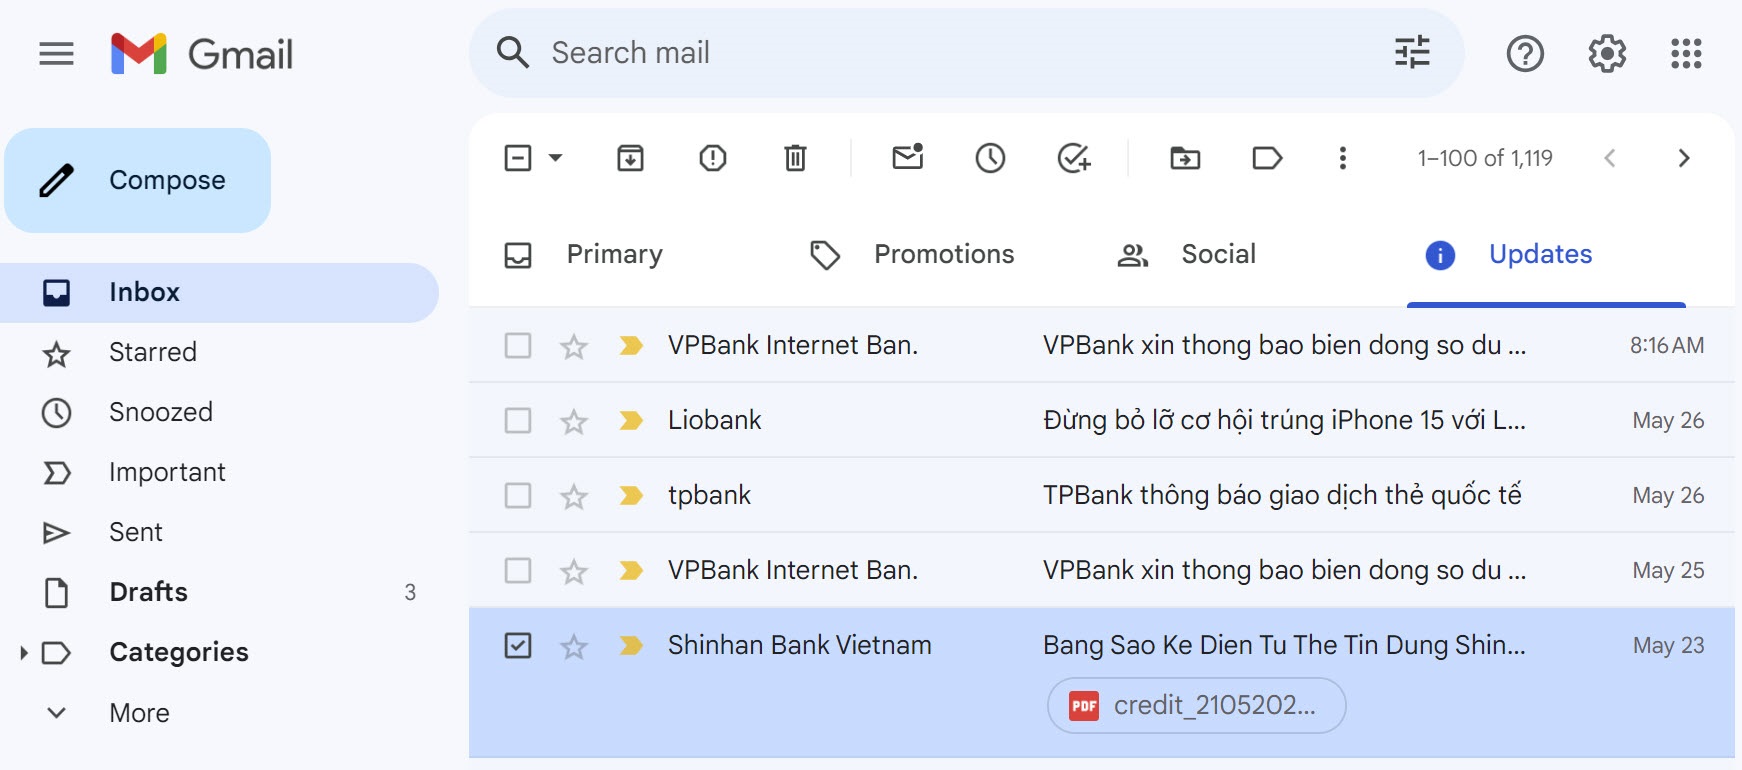 Gmail thêm mục Updates trong Inbox, email ít quan trọng sẽ được lọc vô đó